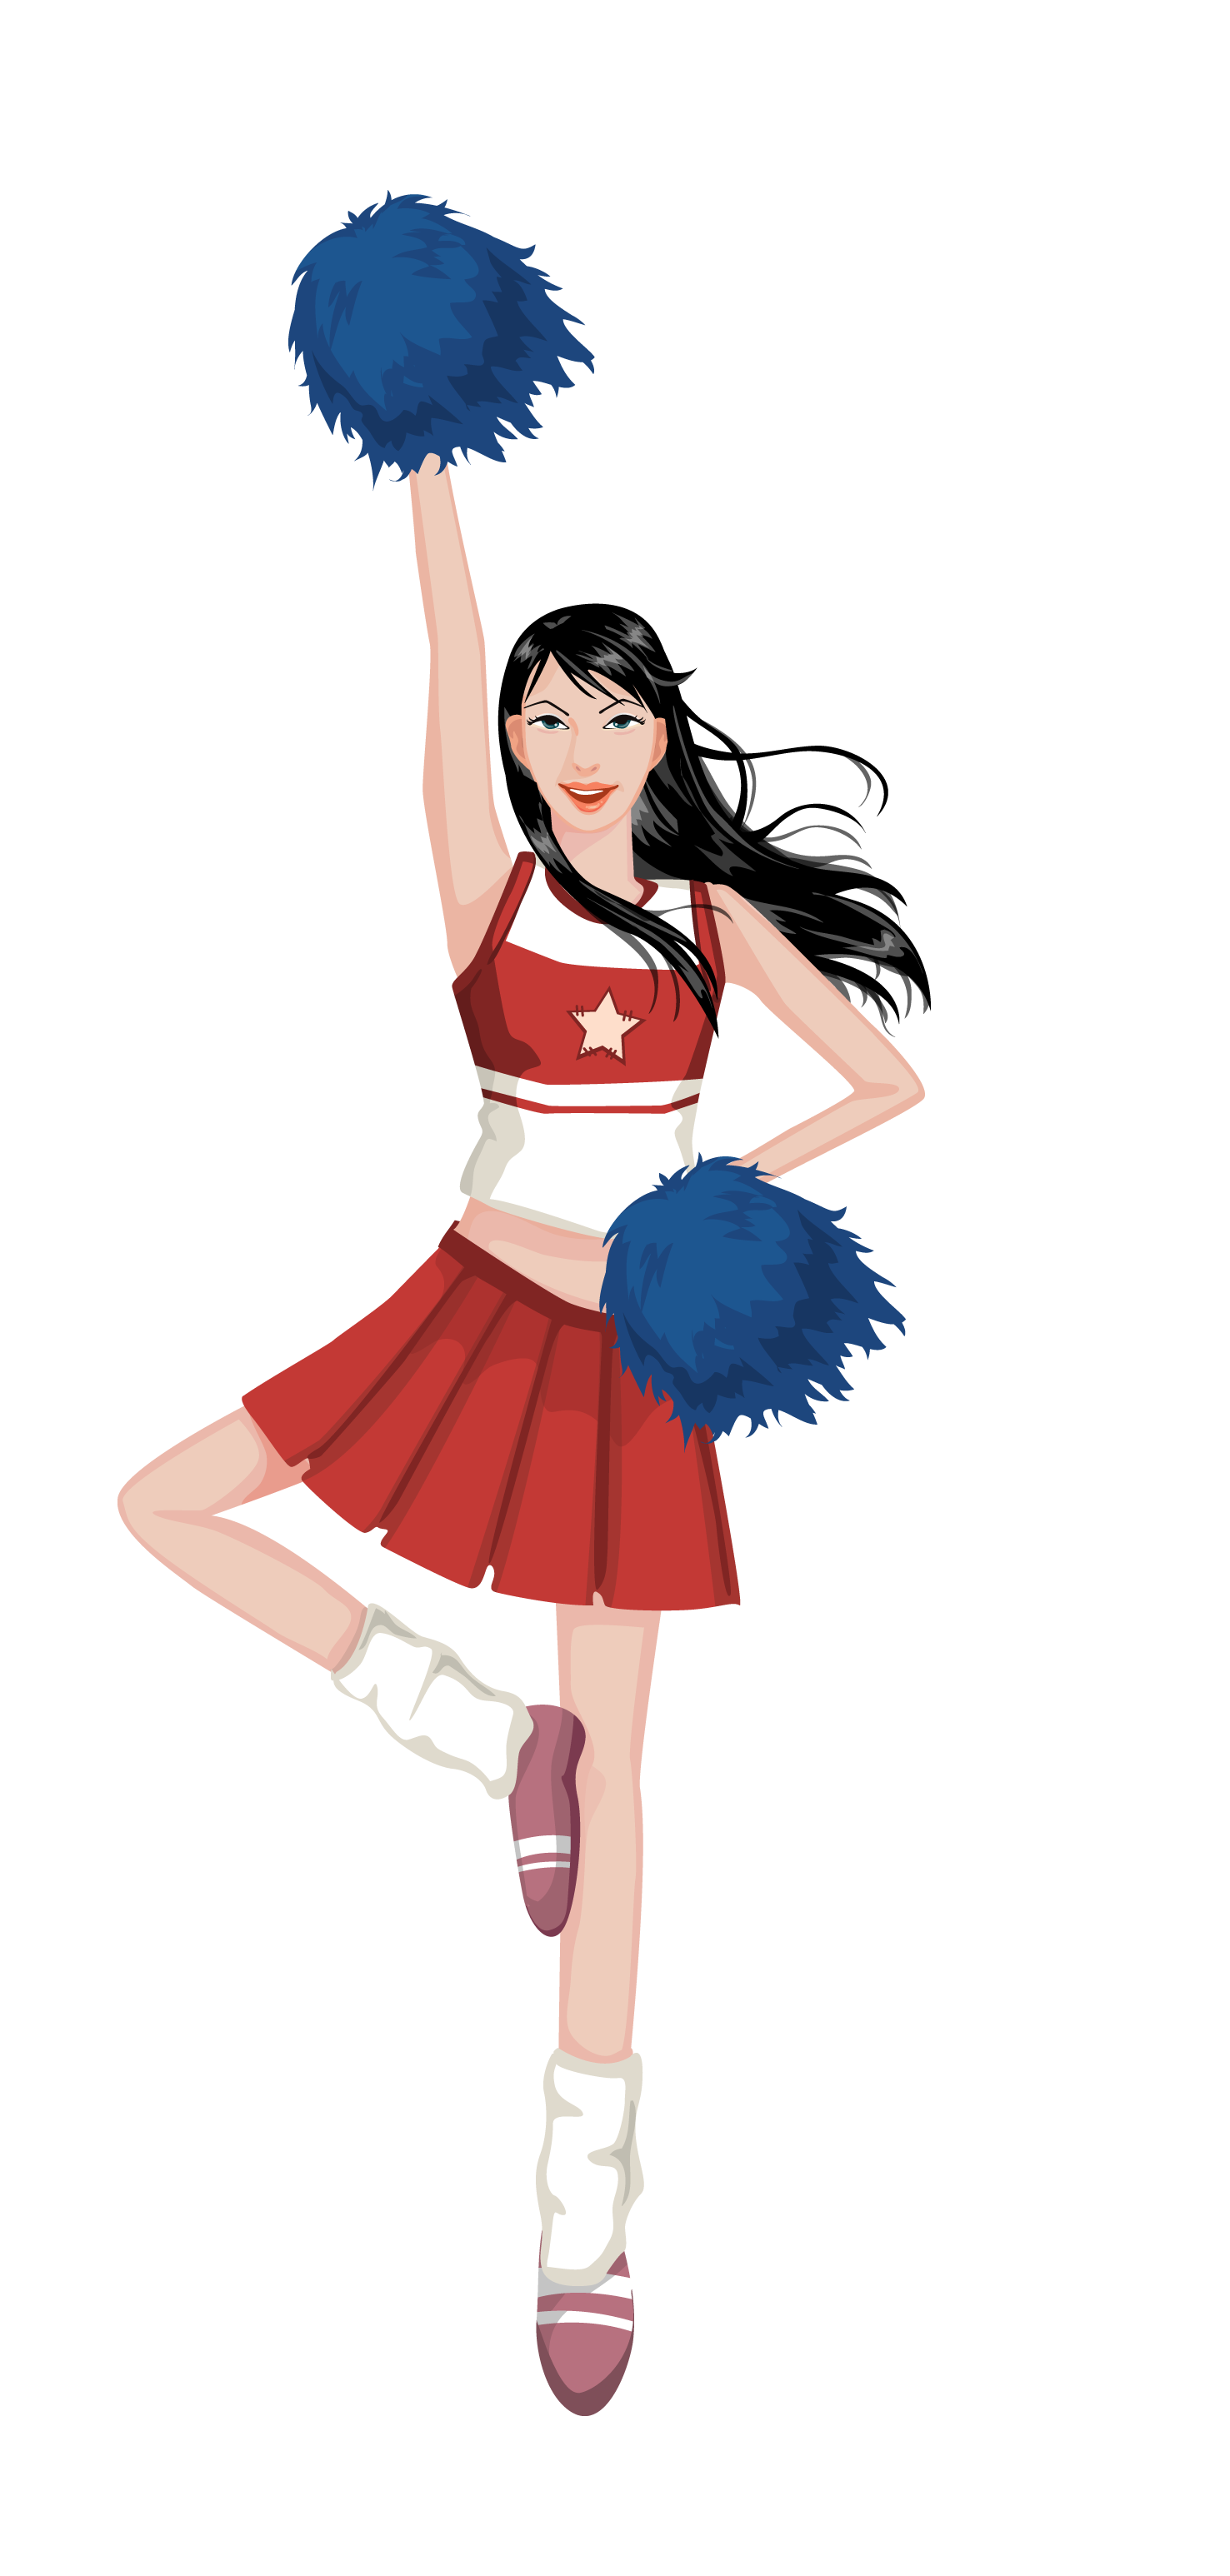 Cheerleader PNG Image HD